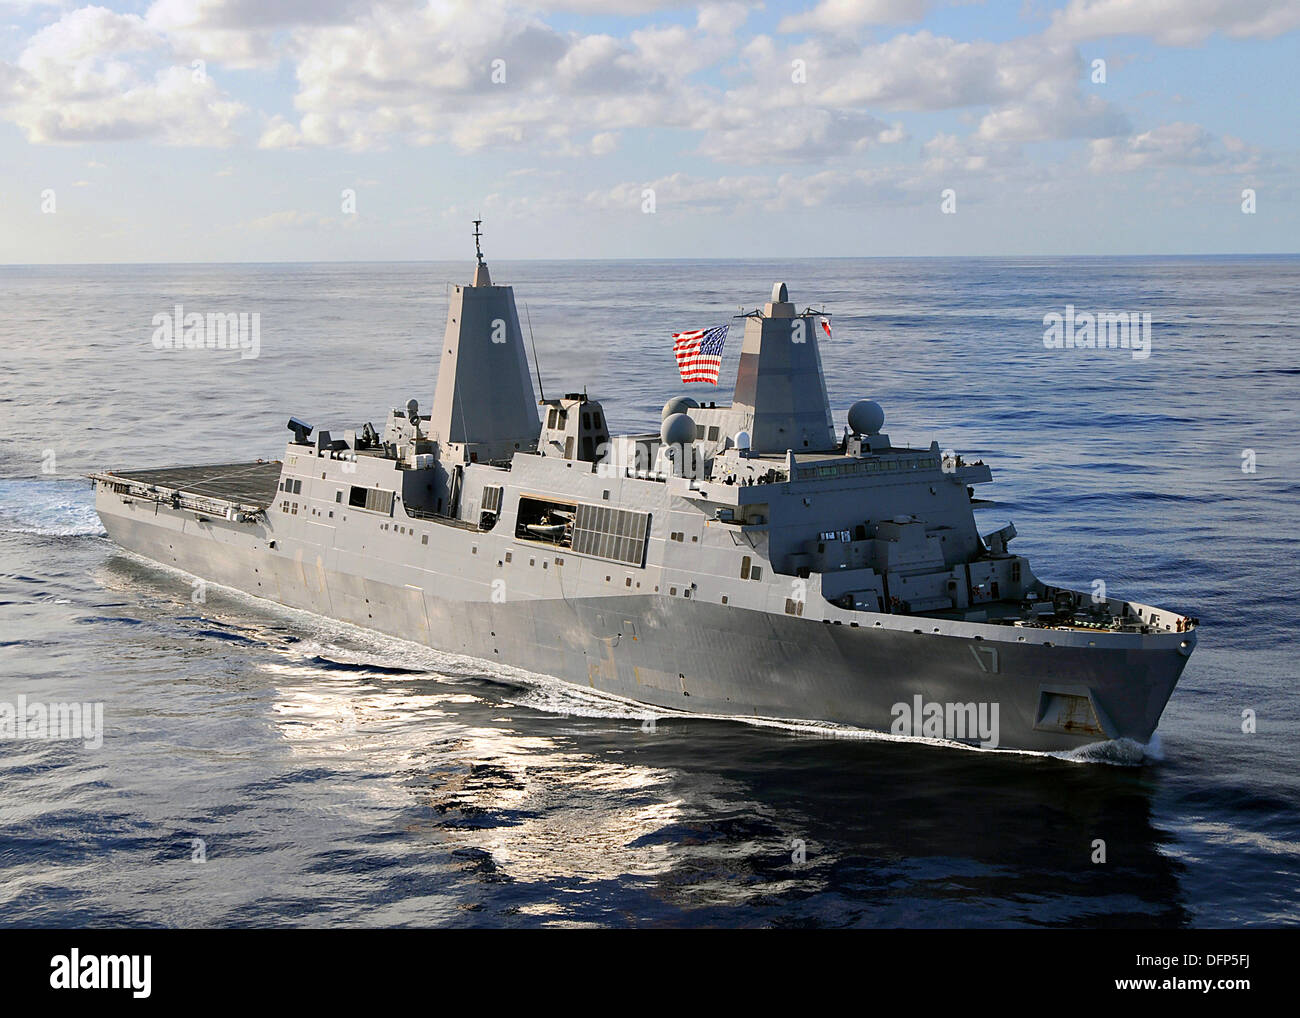 La US Navy USS San Antonio dock buque anfibio de transporte durante las operaciones el 6 de septiembre de 2009 en el Océano Atlántico. Terrorista Abu Anas Al Libi está actualmente recluido en San Antonio después de su captura el 5 de octubre de 2013 en Libia. Foto de stock